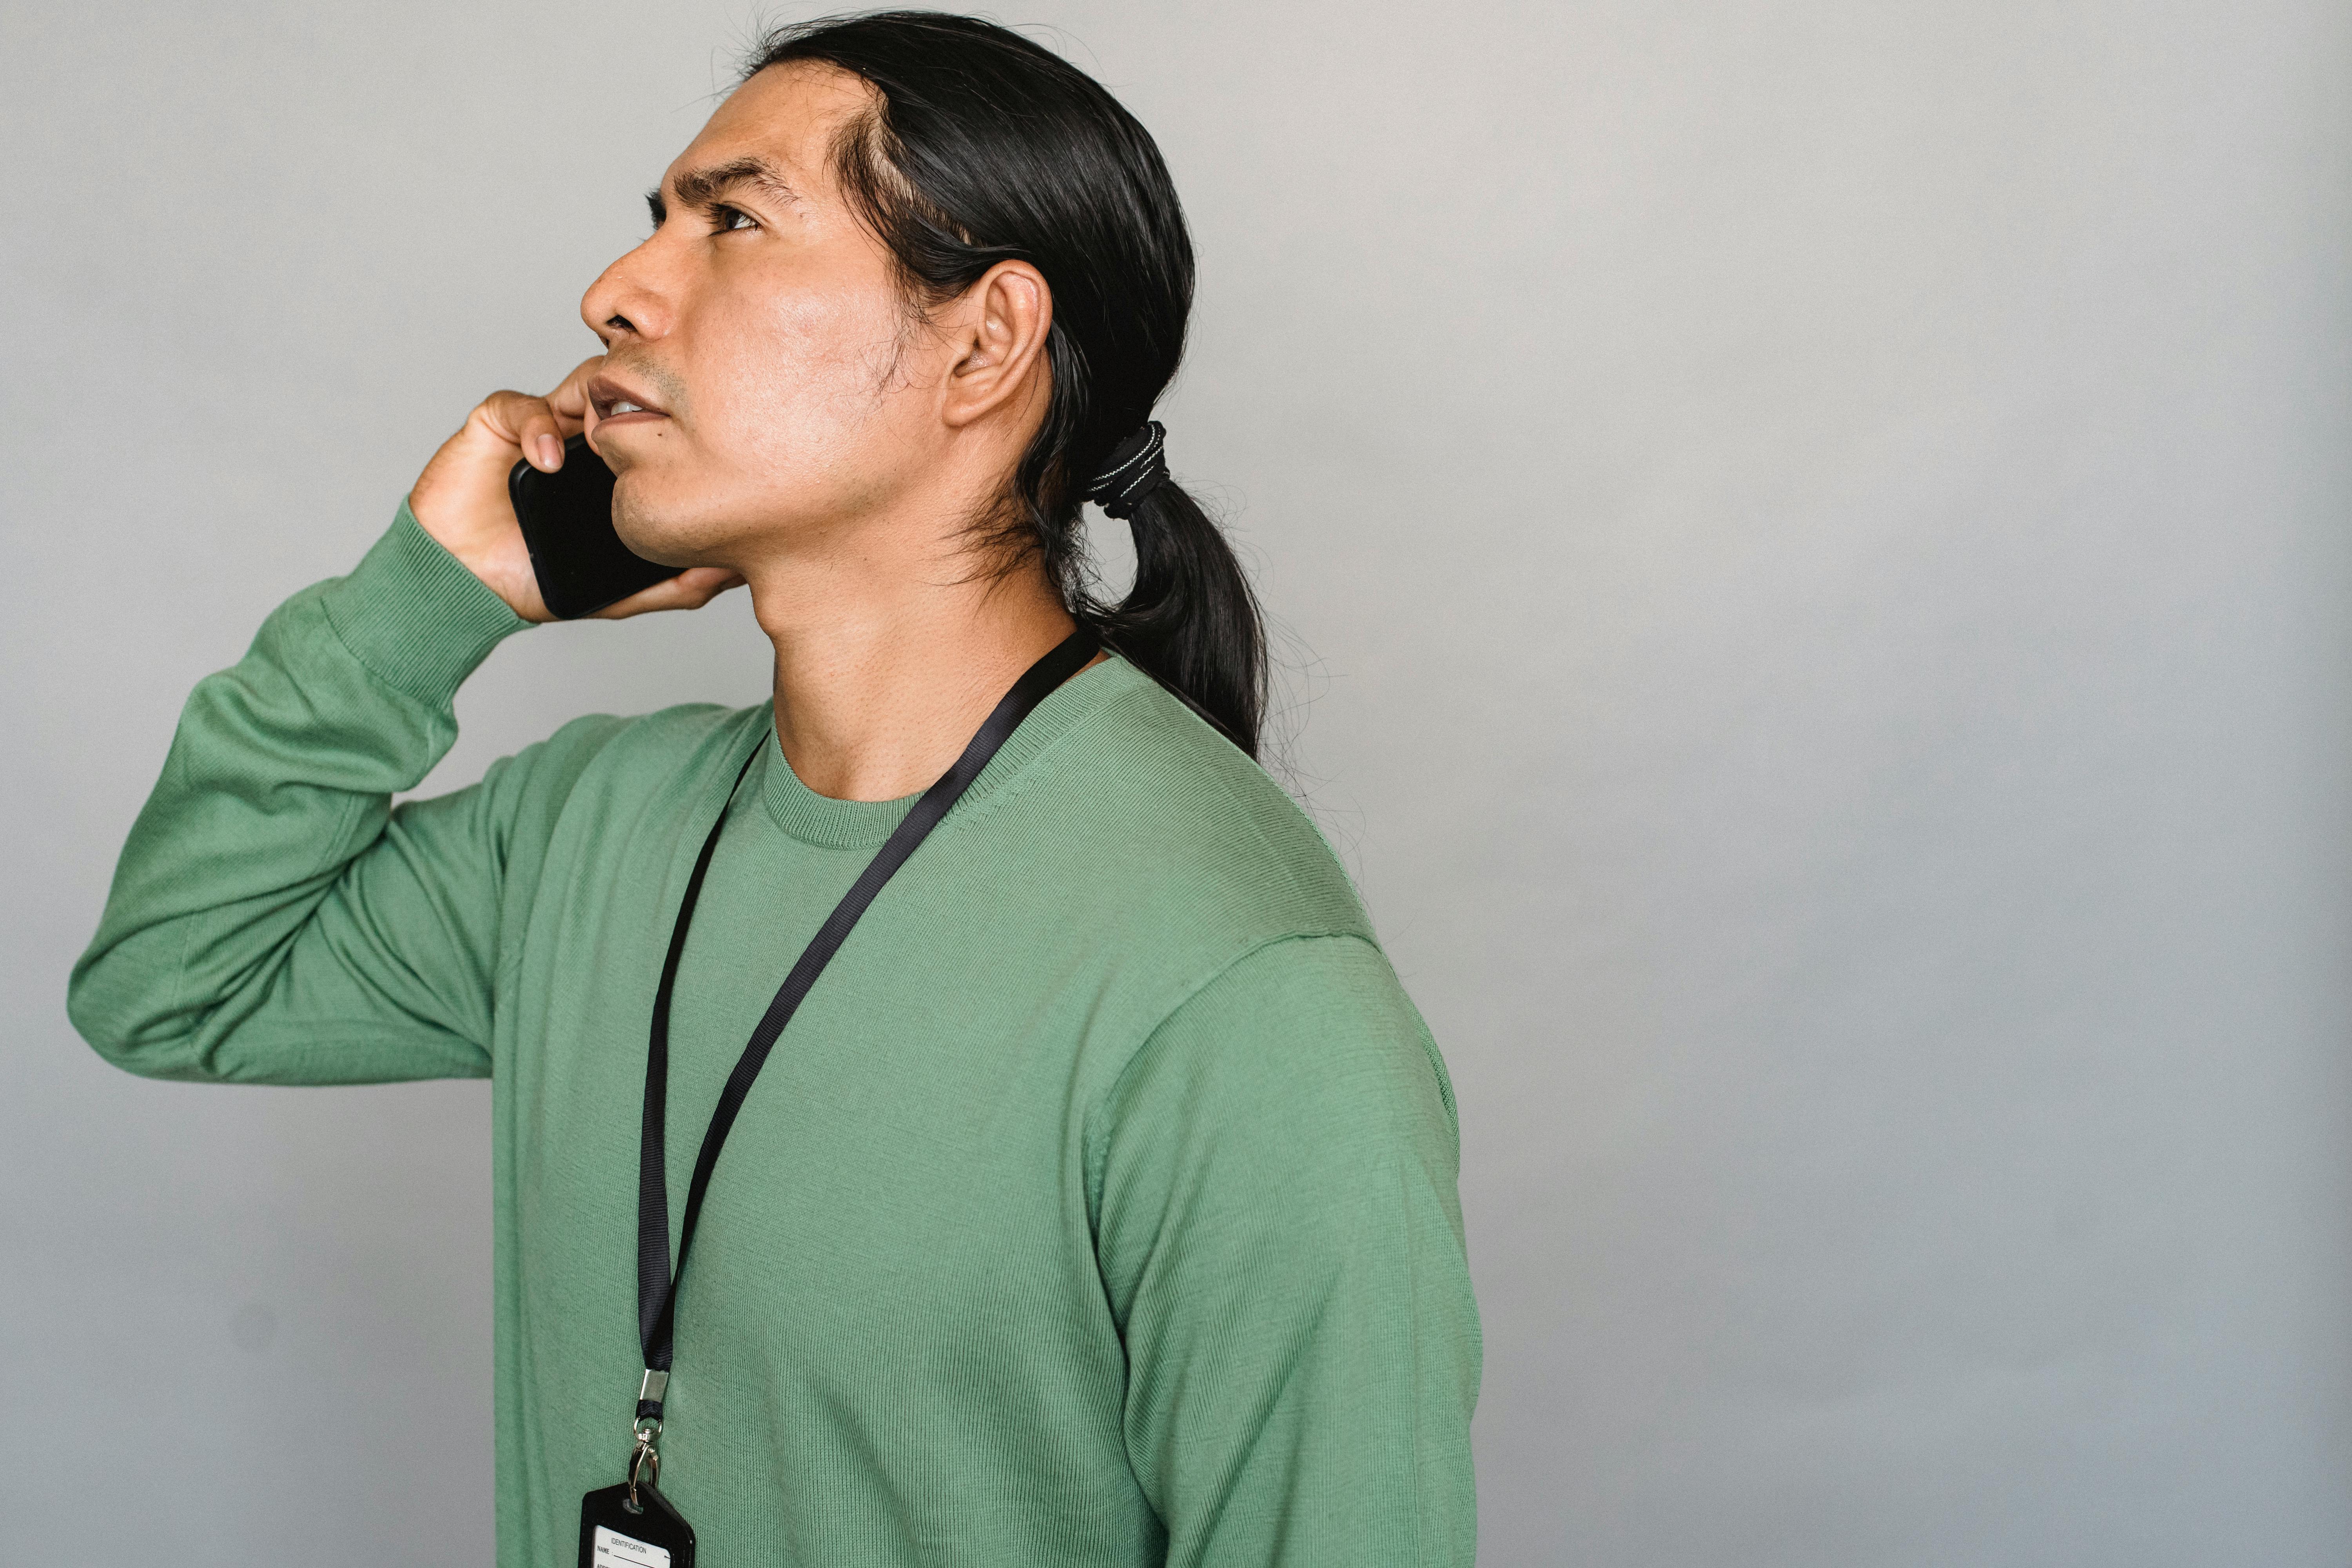 Un homme à l'air contrarié qui parle au téléphone | Source : Pexels